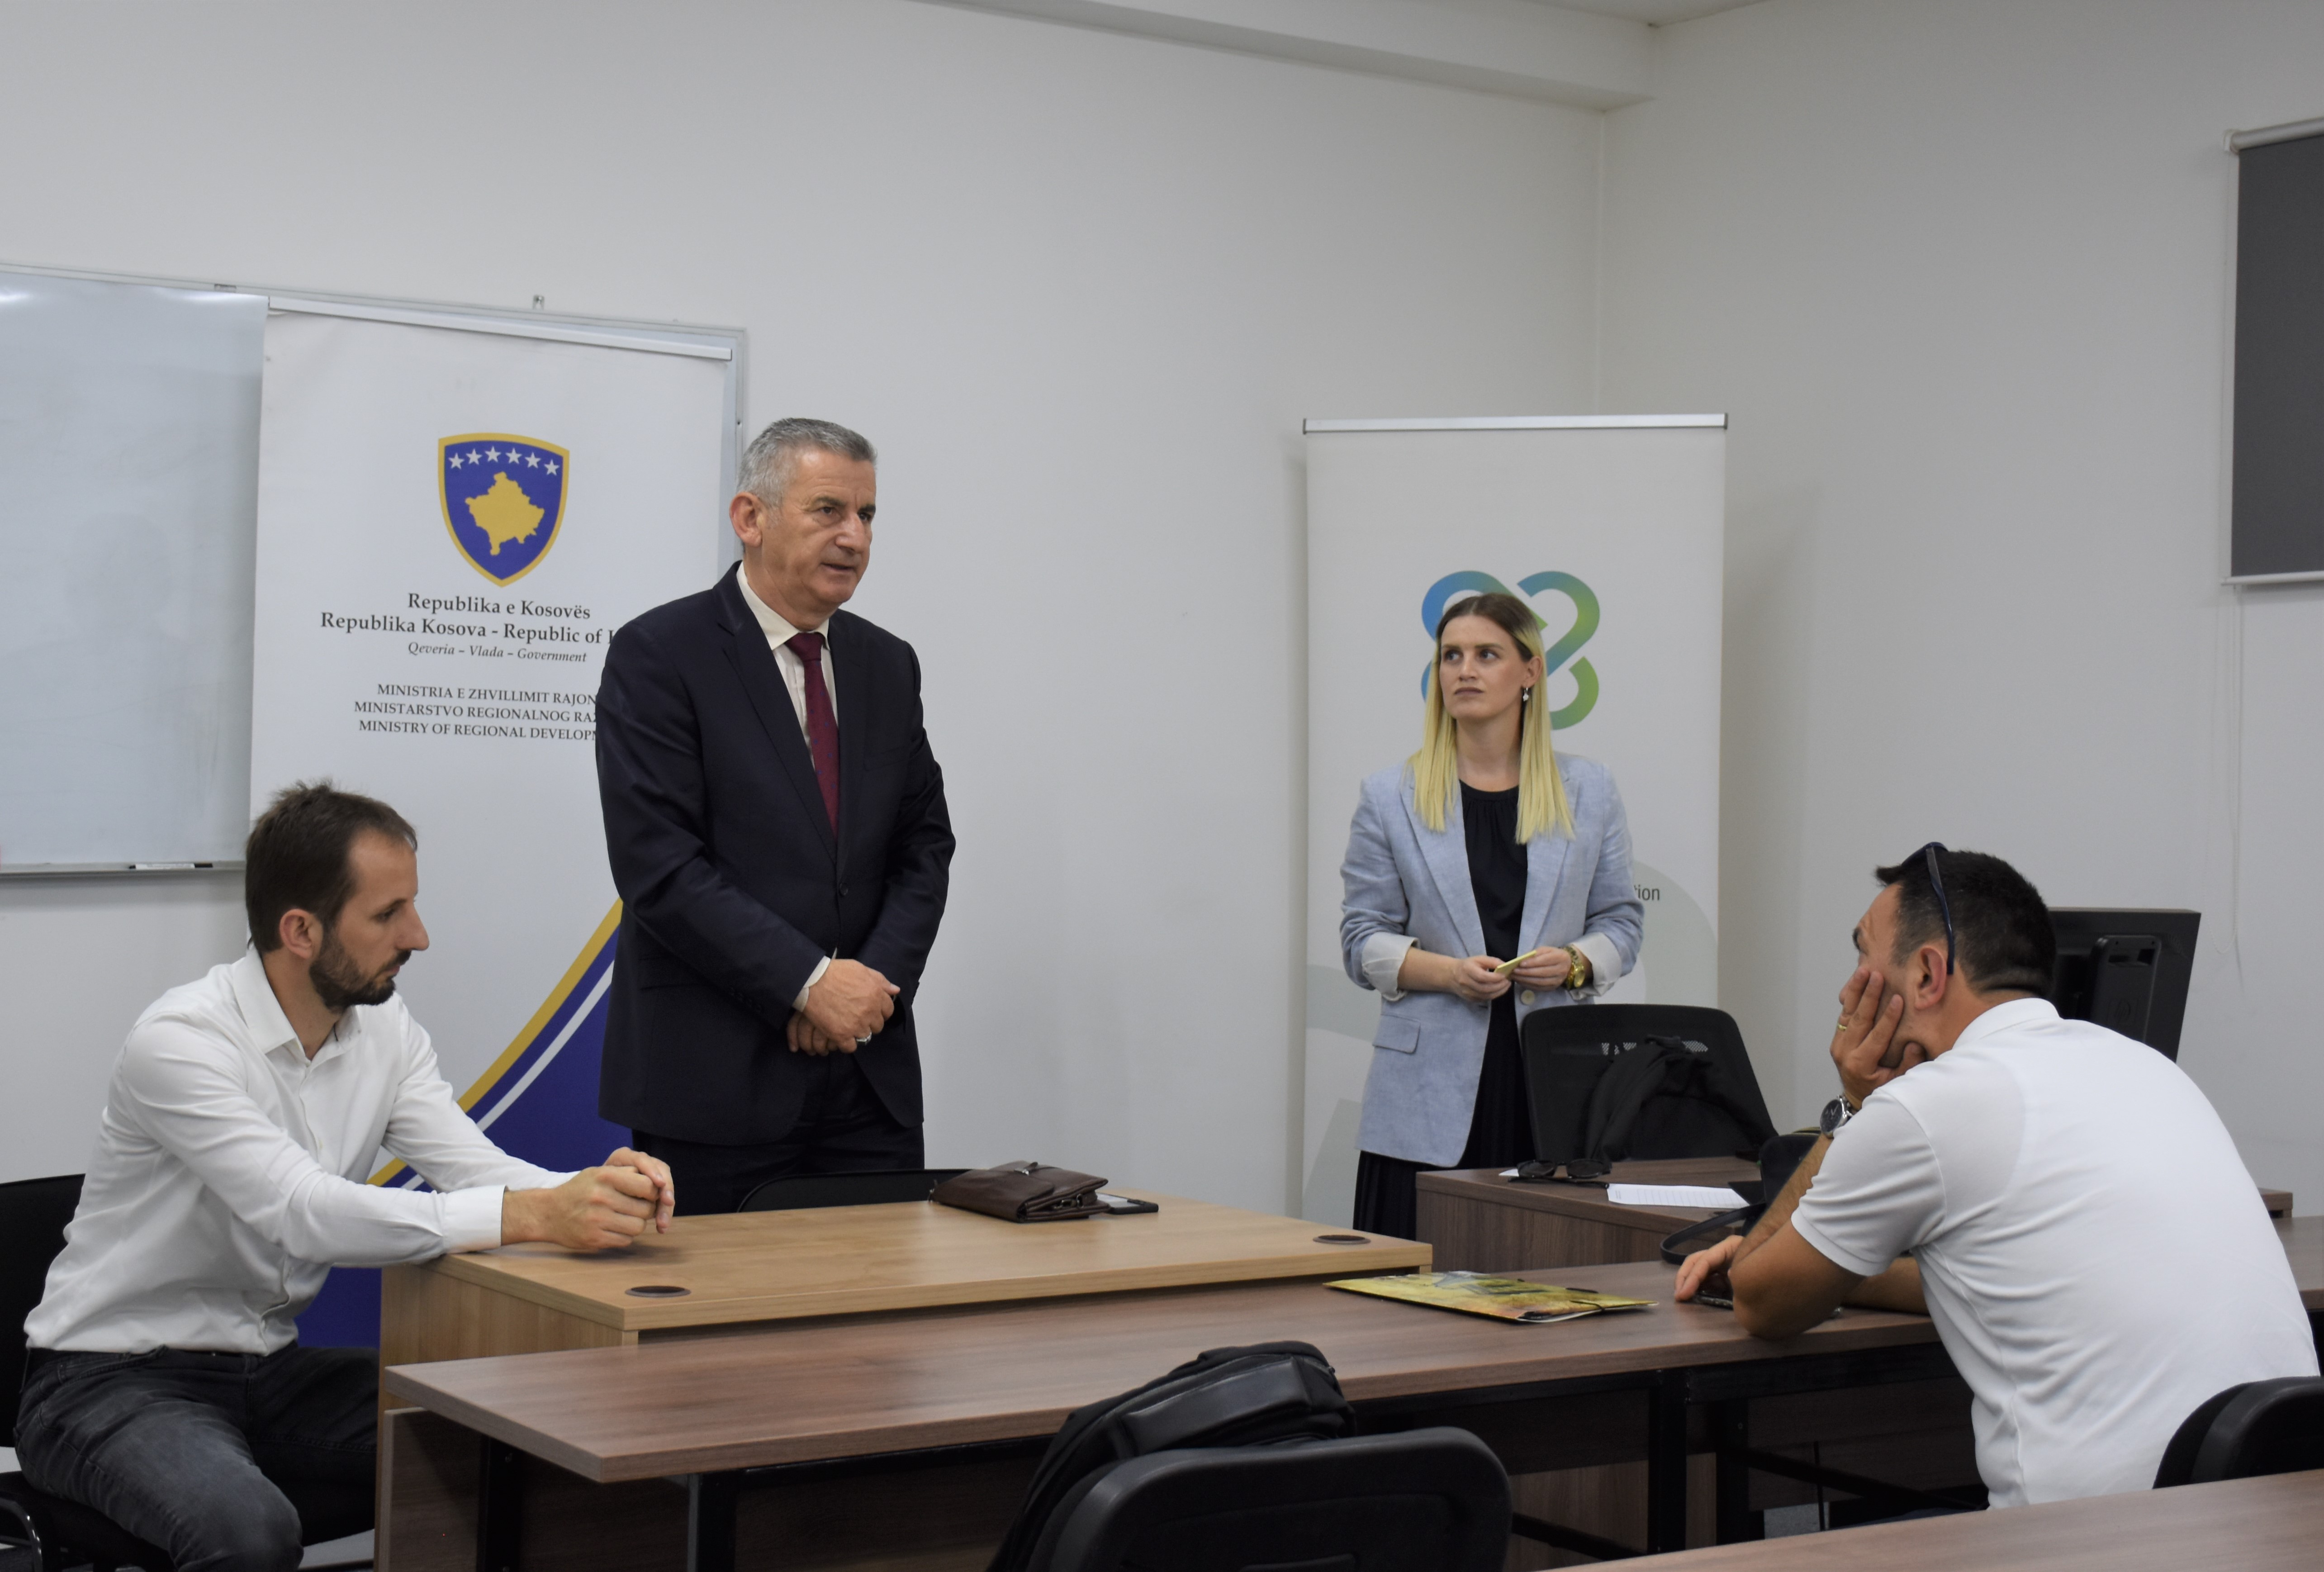 OJQ Instituti për Zhvillim dhe Integrim “IZHI” e mbështetur nga Ministria e Zhvillimit Rajonal “MZHR”, ka realizuar trajnimin me temën ”Avancimi i bashkëpunimit në mes shoqatave dhe biznesëve në regjionin e Prishtinës” 